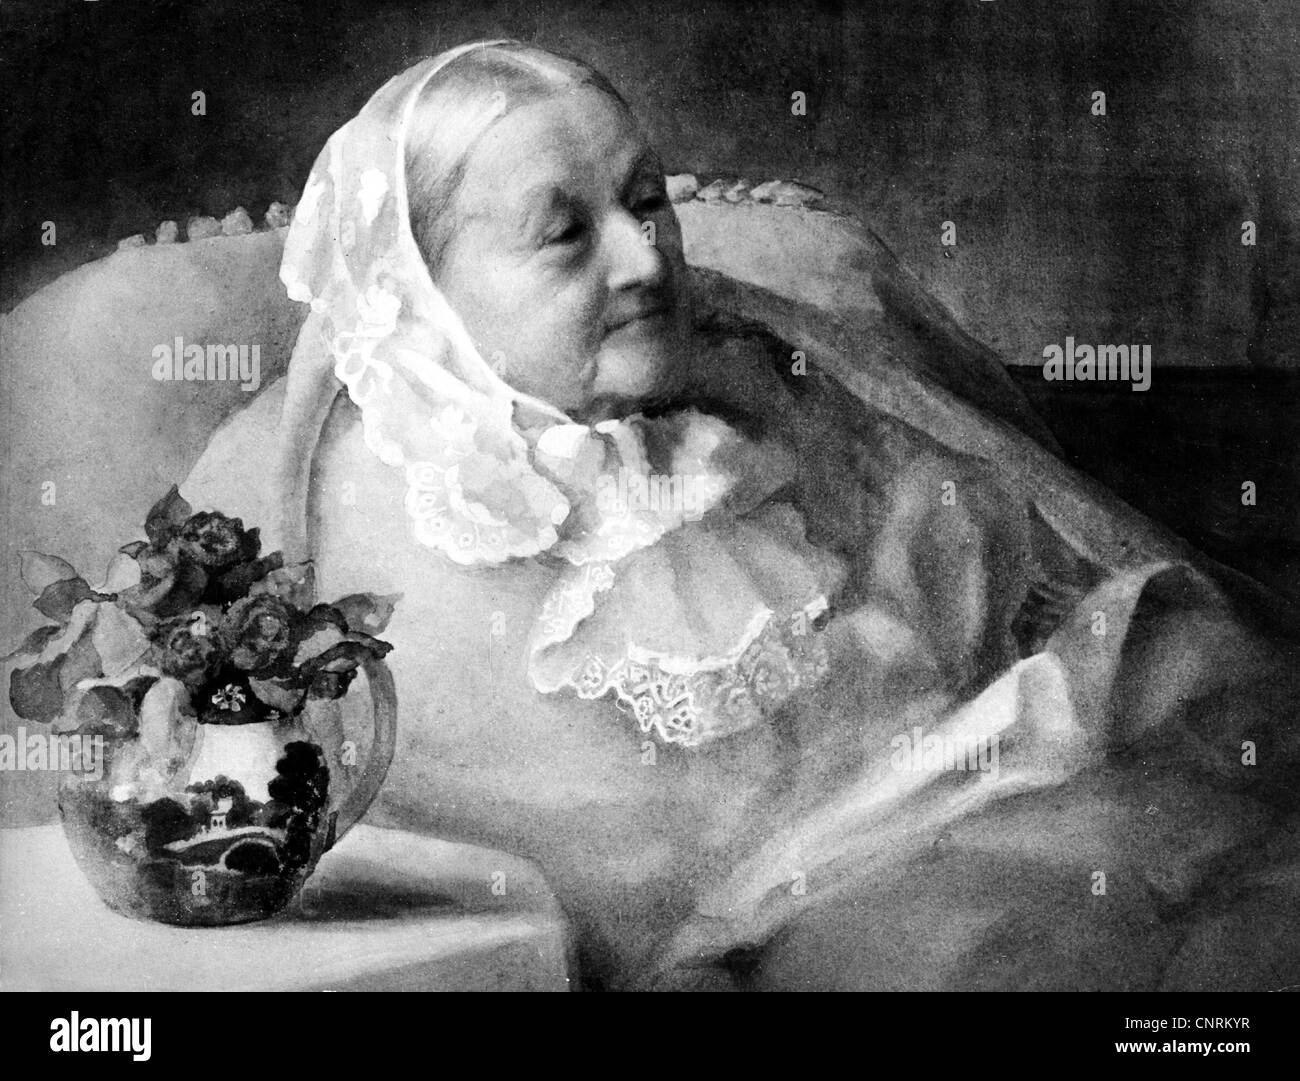 Nightingale, Florence, 15.5.1820 - 13.8.1910, infermiera britannica, vecchiaia, nel suo letto, dipinto da Frances Amicia de Biden Footner, 1907, , Foto Stock